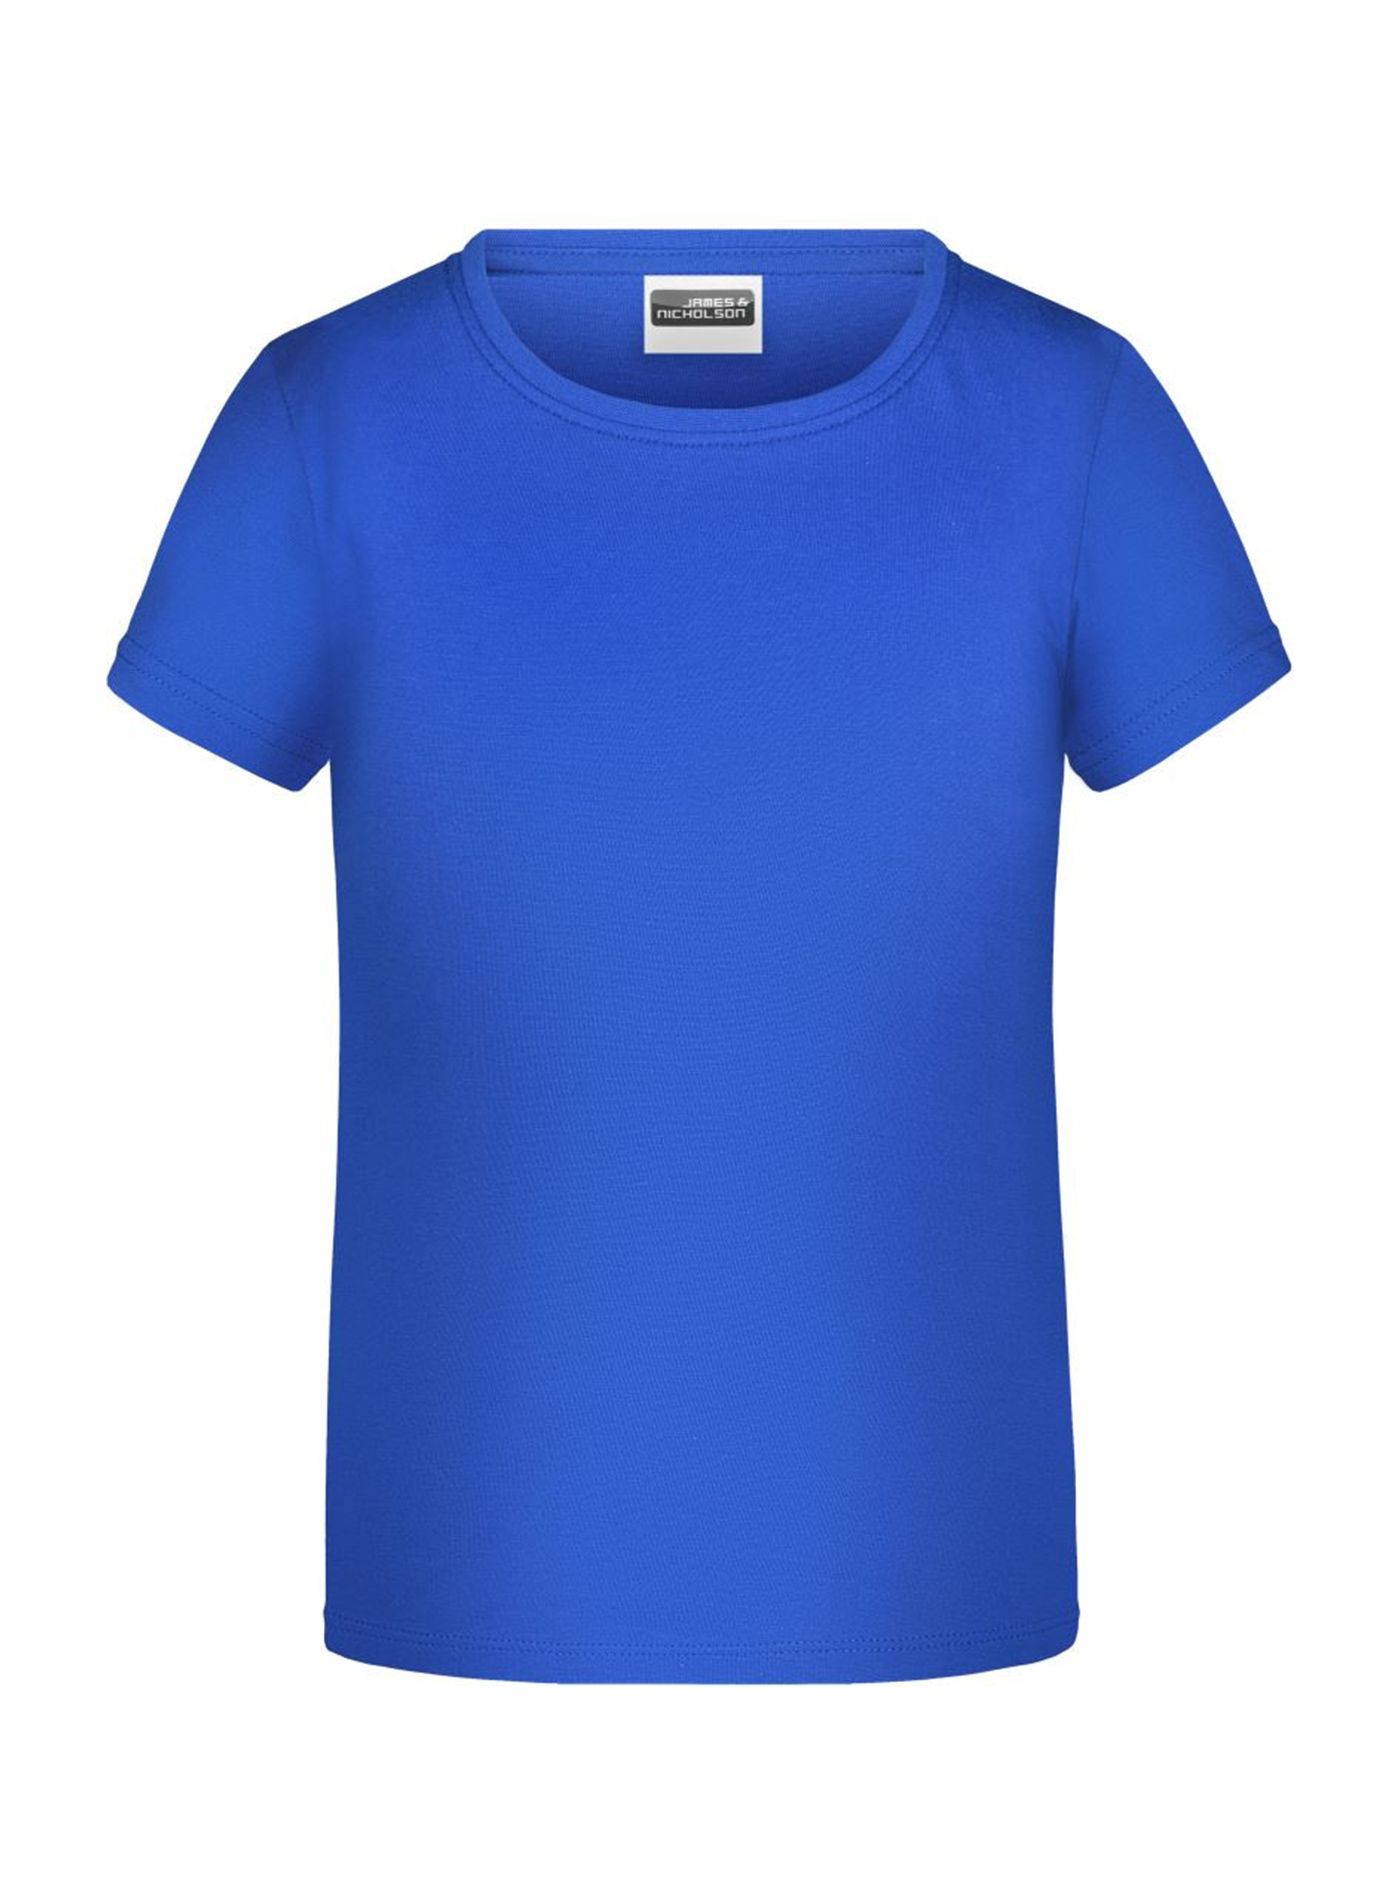 Dívčí tričko James & Nicholson - Královská modrá M